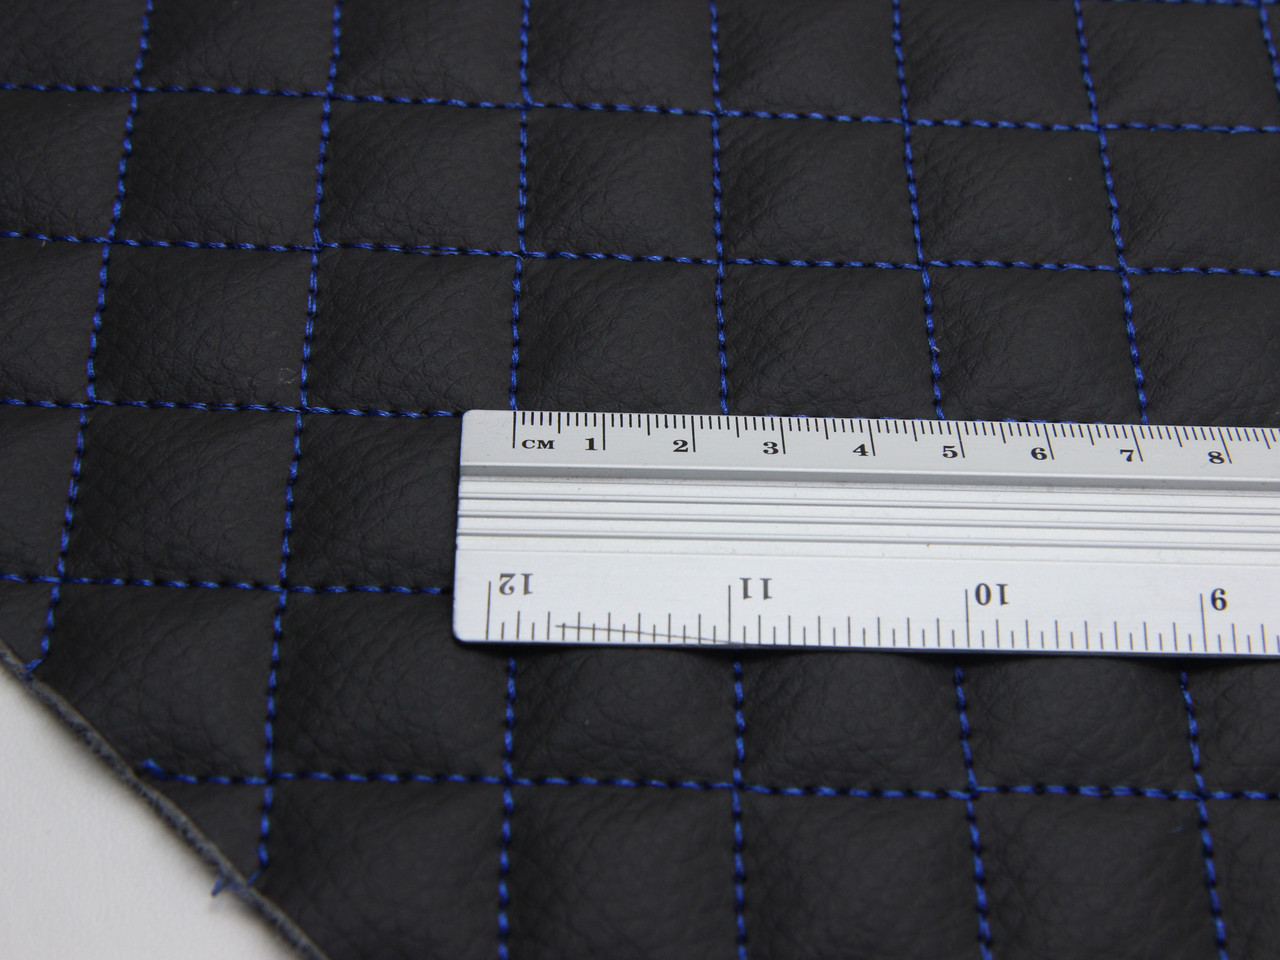 Кожзам стёганый черный «маленькой-ромб» (прошитый синей нитью) дублированный синтепоном и флизелином, ширина 1,35м детальная фотка